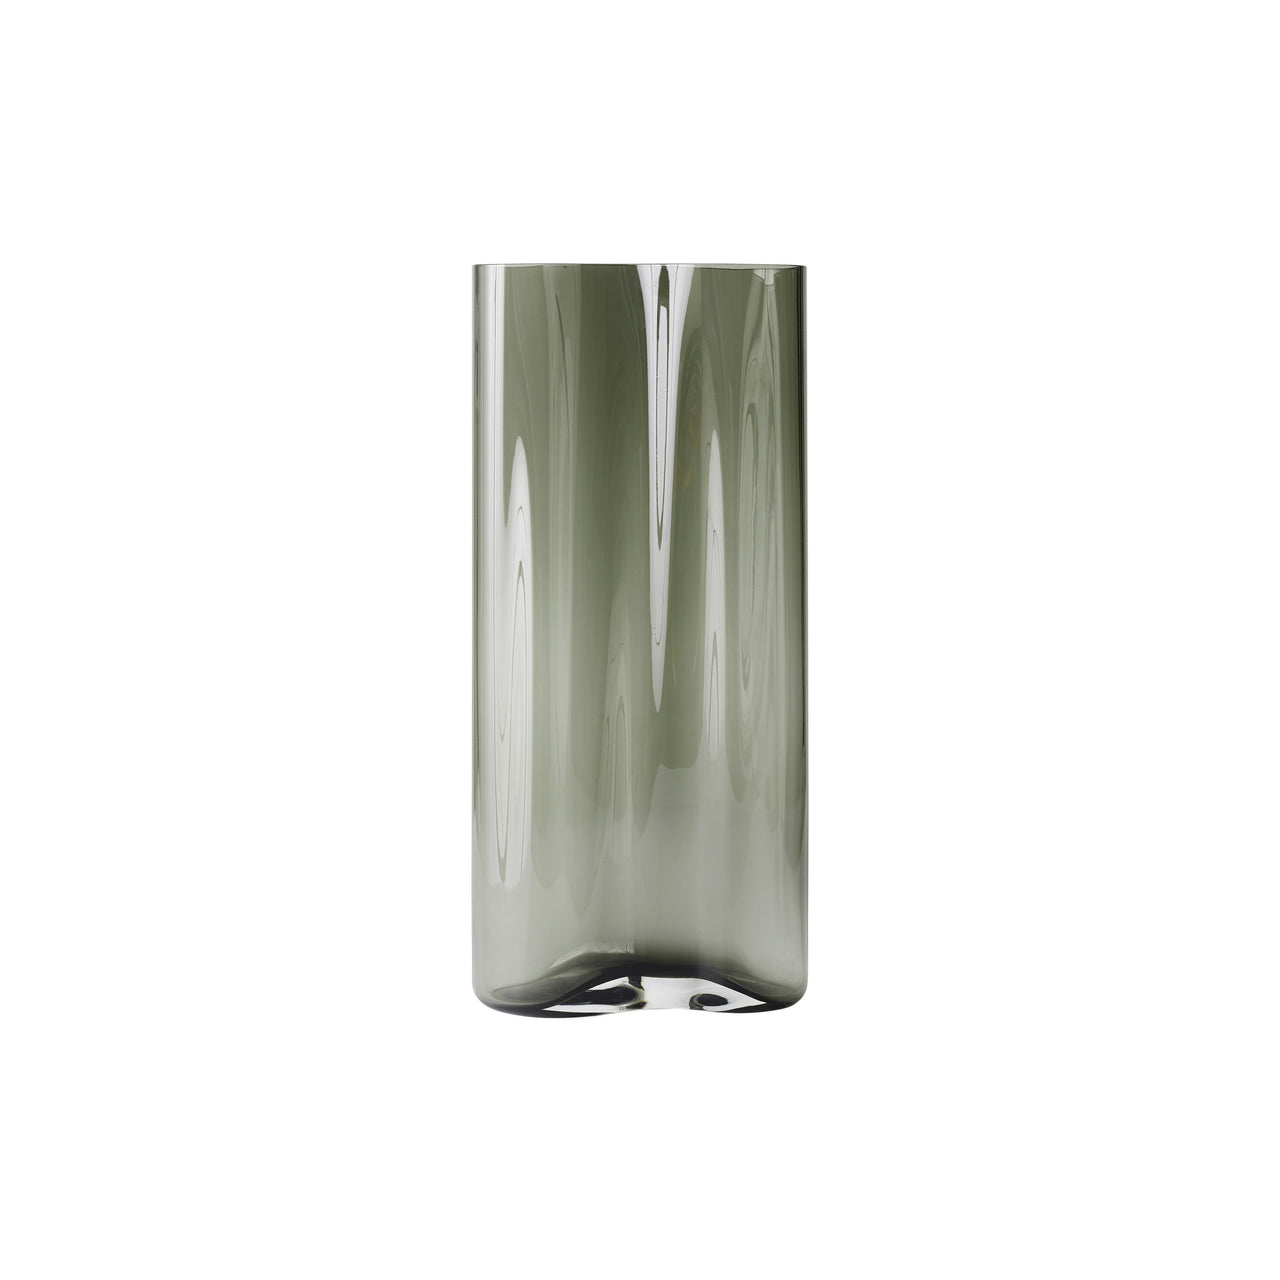 Aer Vase: Large - 19.3